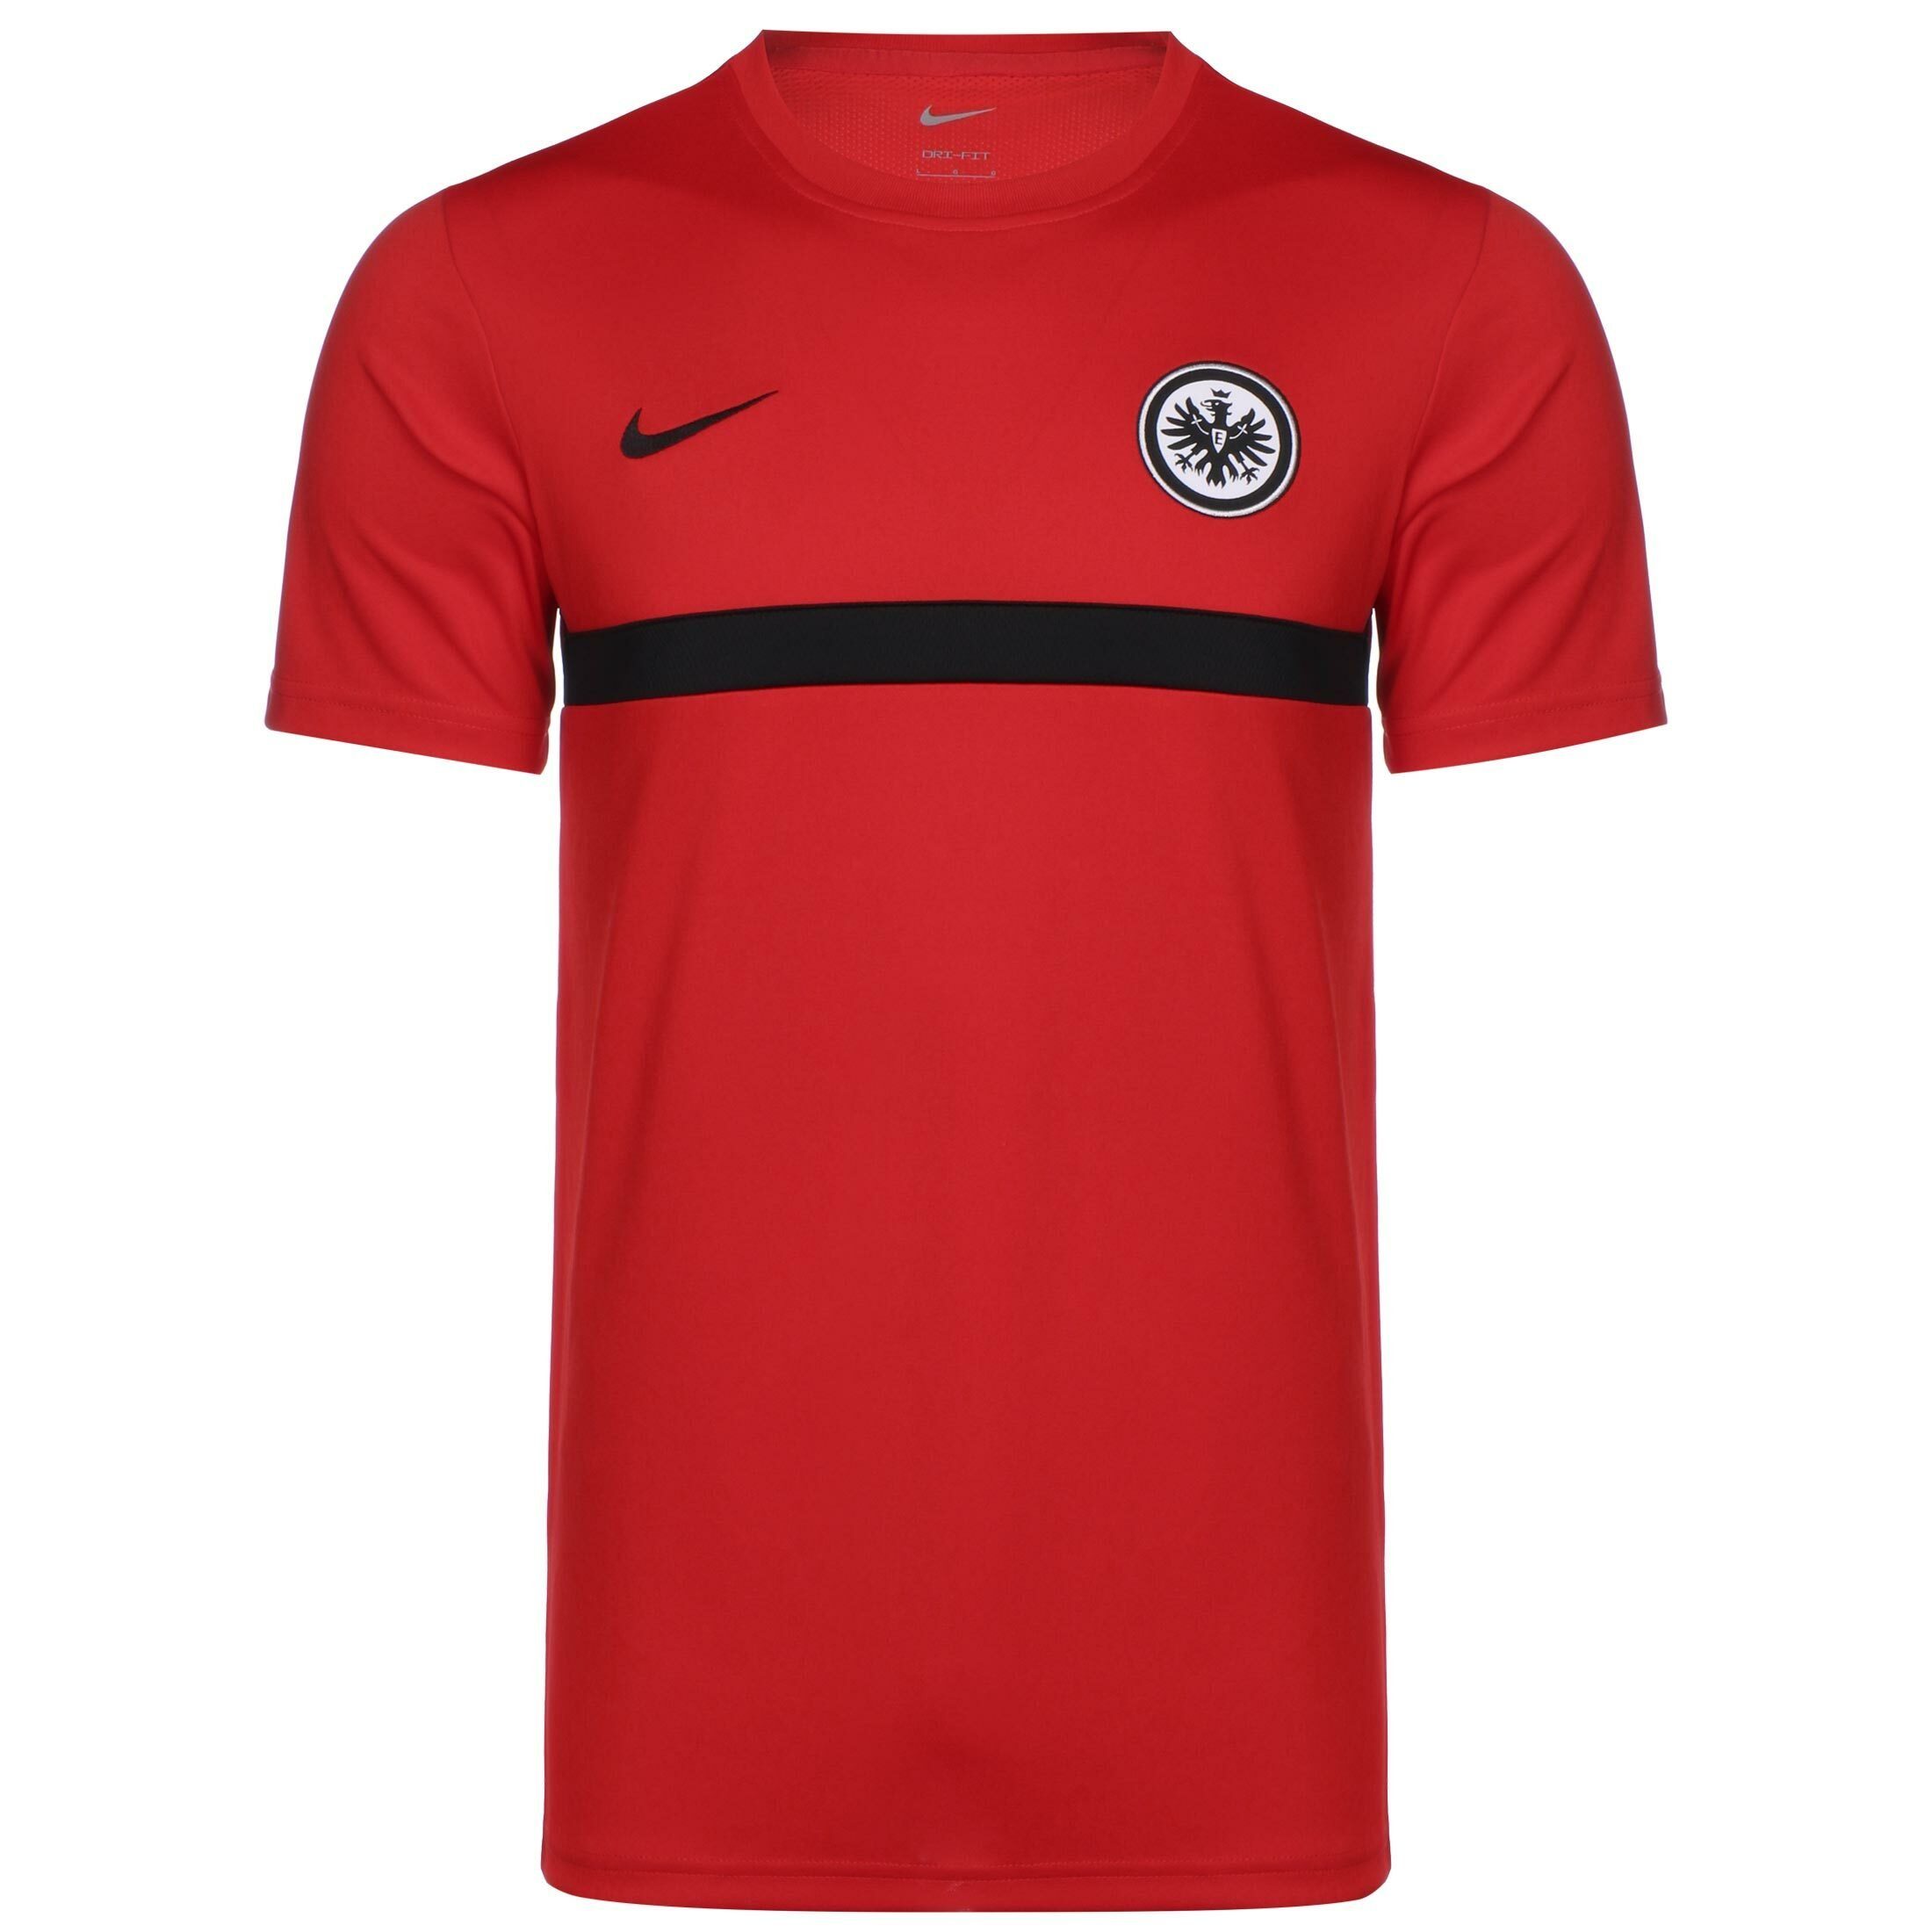 Nike Trainingsshirt »Eintracht Frankfurt Academy Pro« online kaufen | OTTO